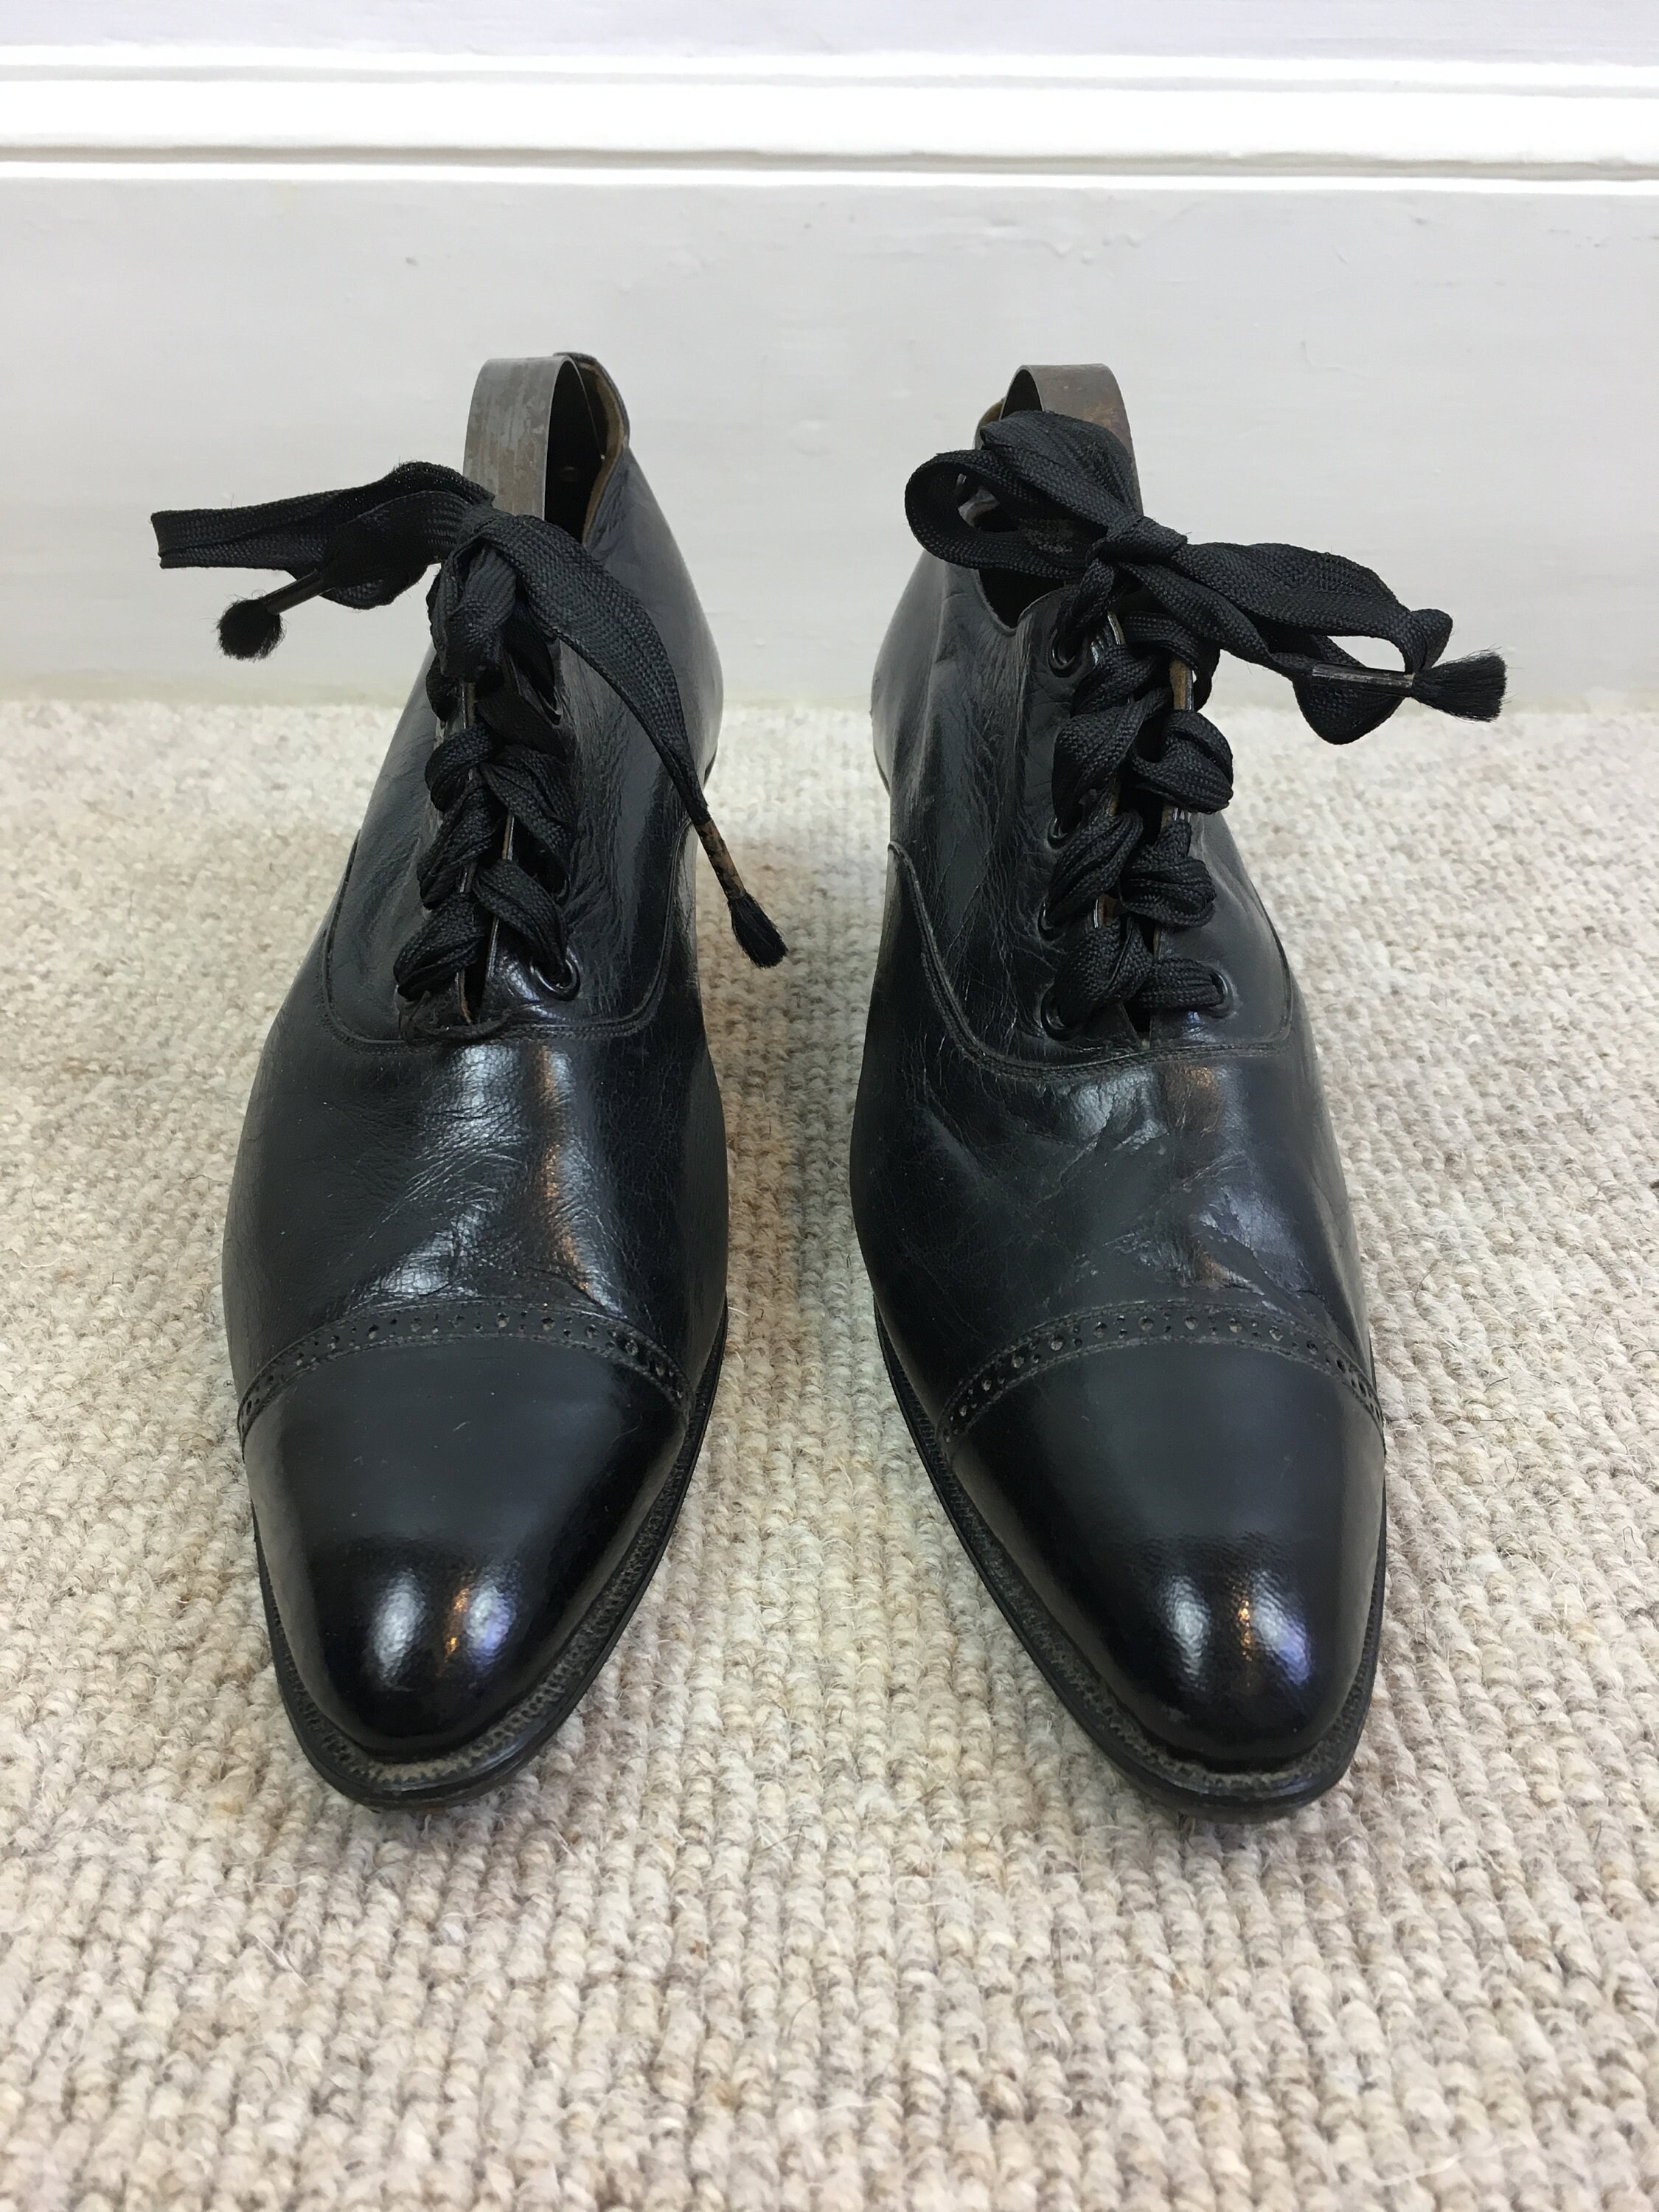 Original Victorian Shoes Antique Black Leather Lace up Shoes - Etsy UK